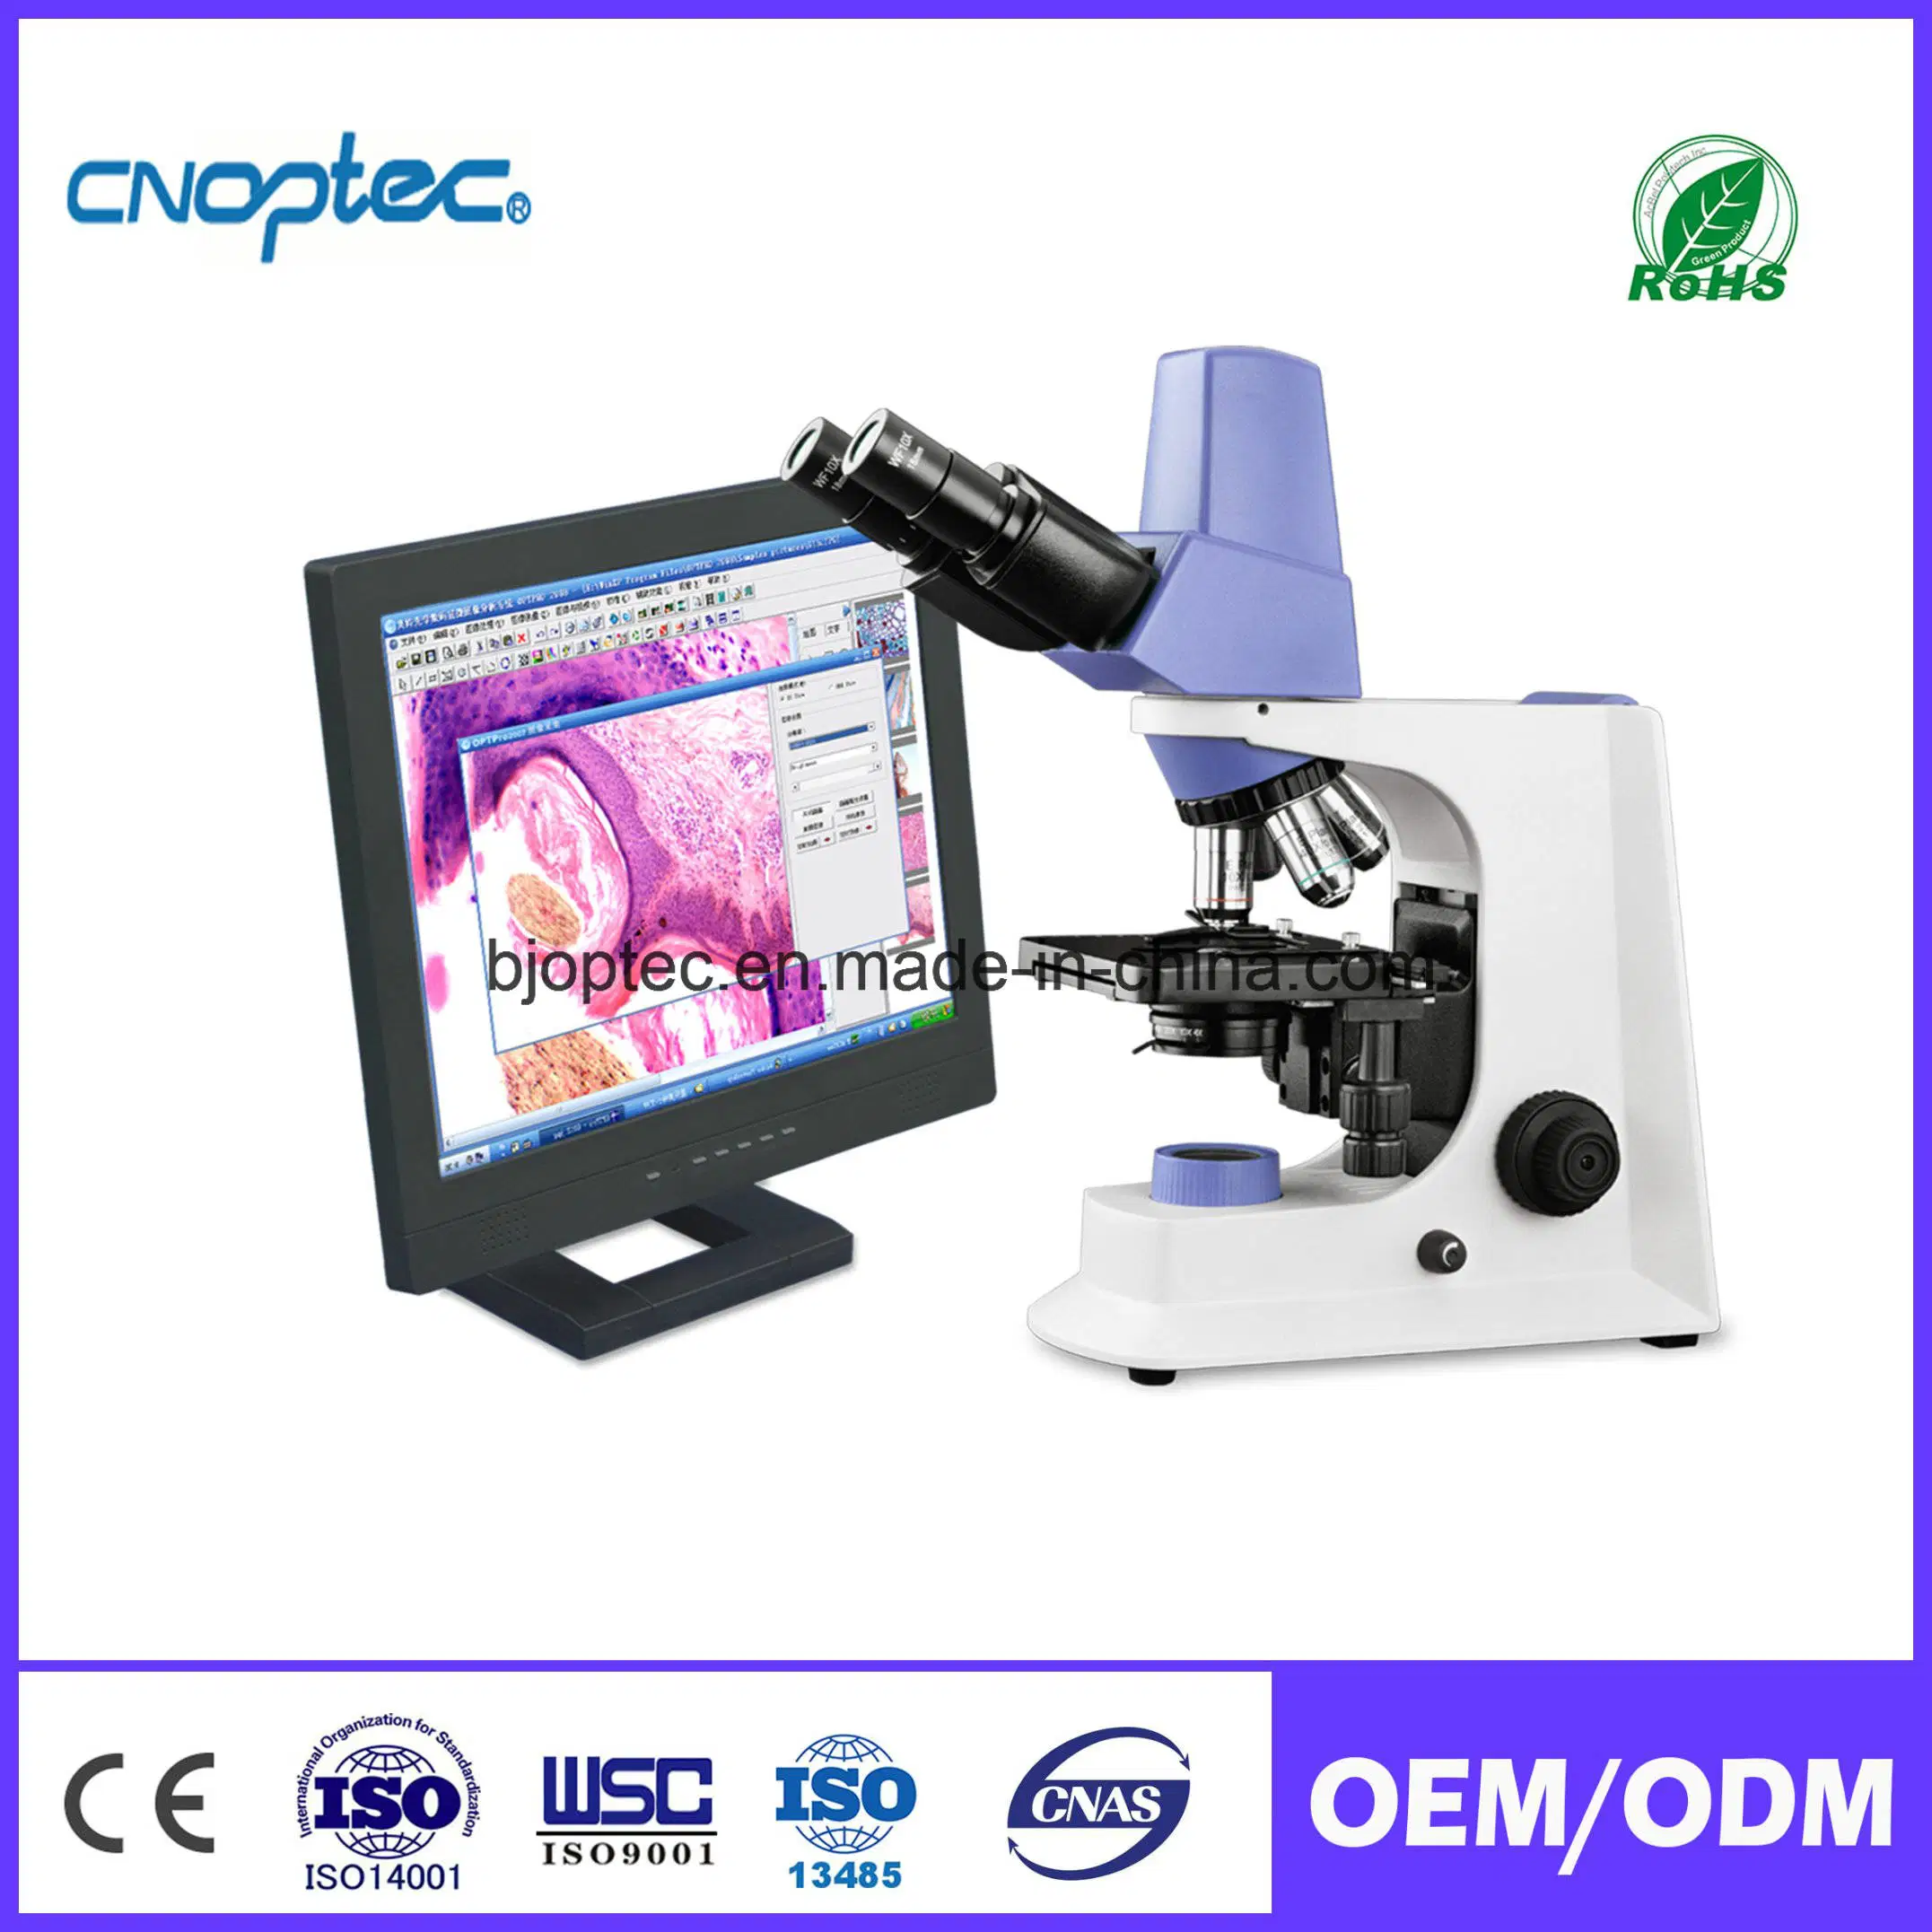 Biológicos LCD Digital Microscopio para suministro médico